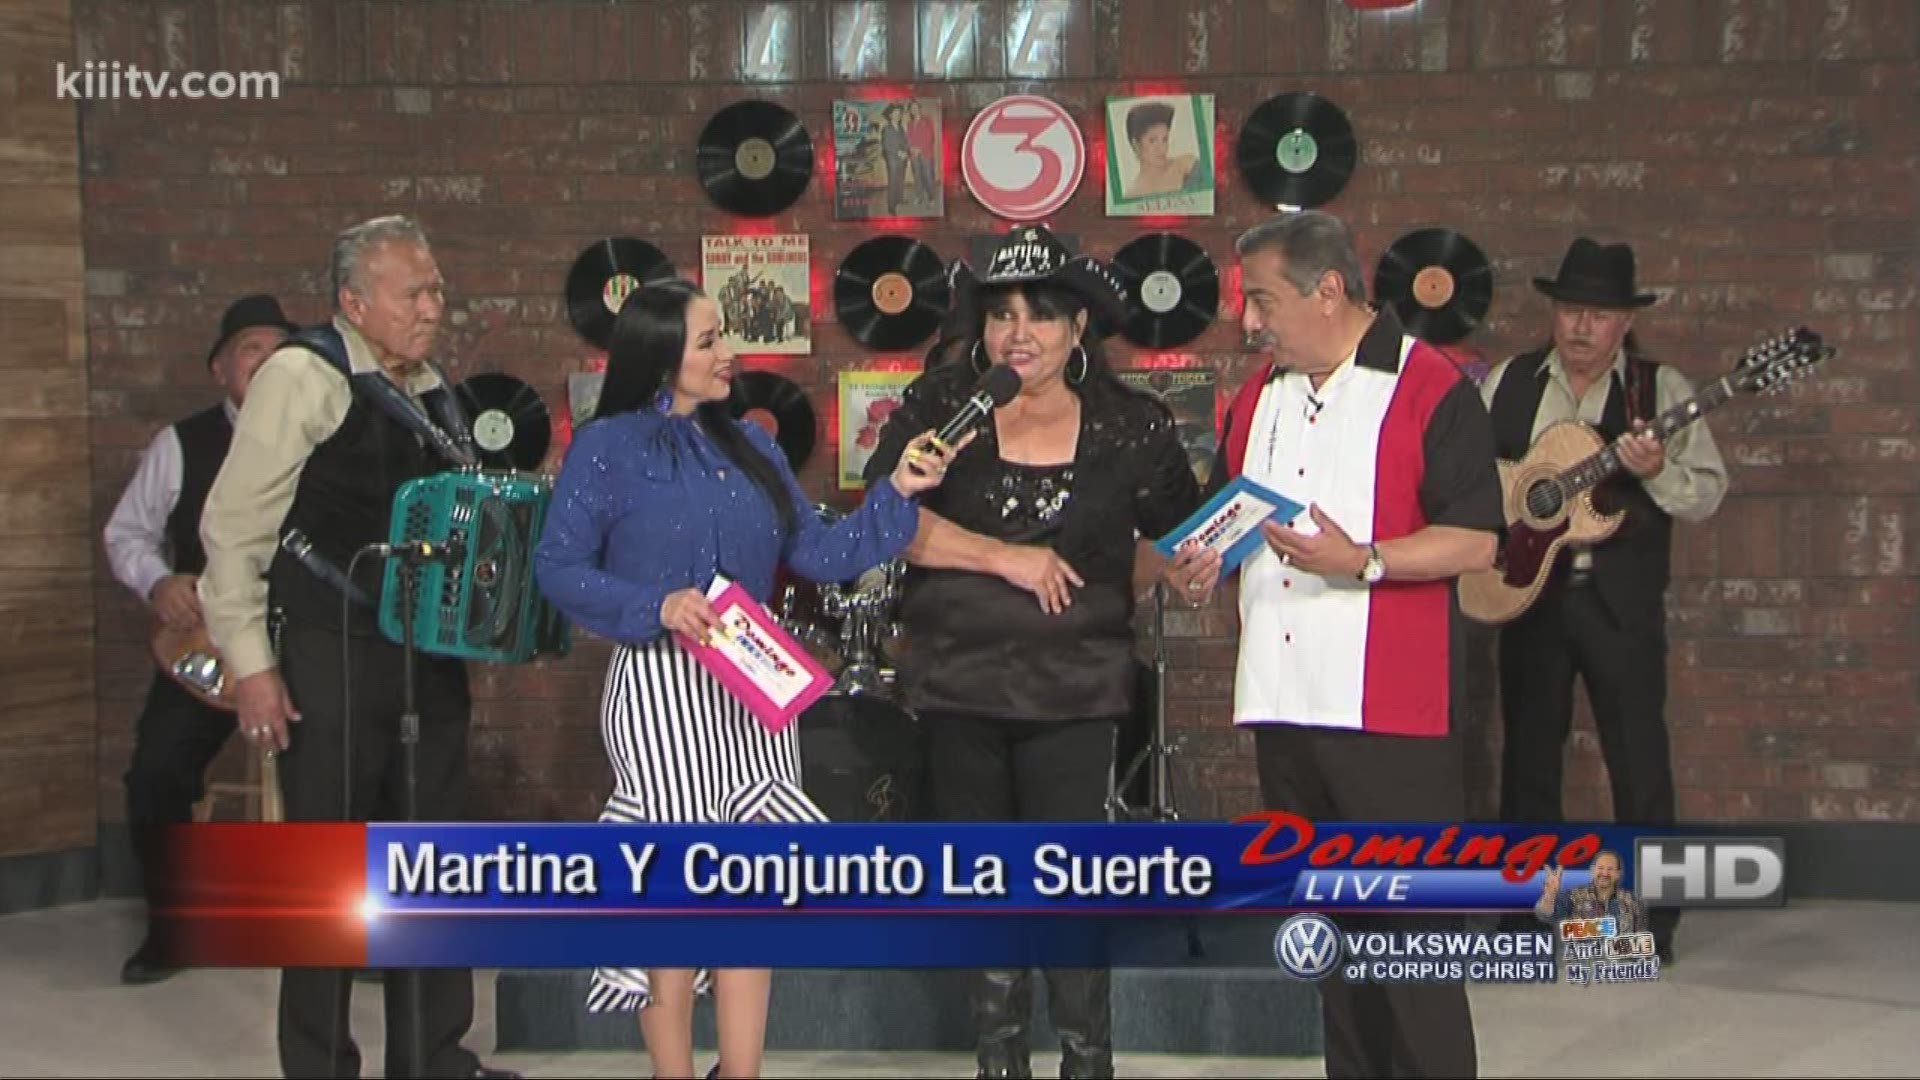 Martina Y Conjunto La Suerte Interview with Barbi Leo and Rudy Trevino on Domingo Live.